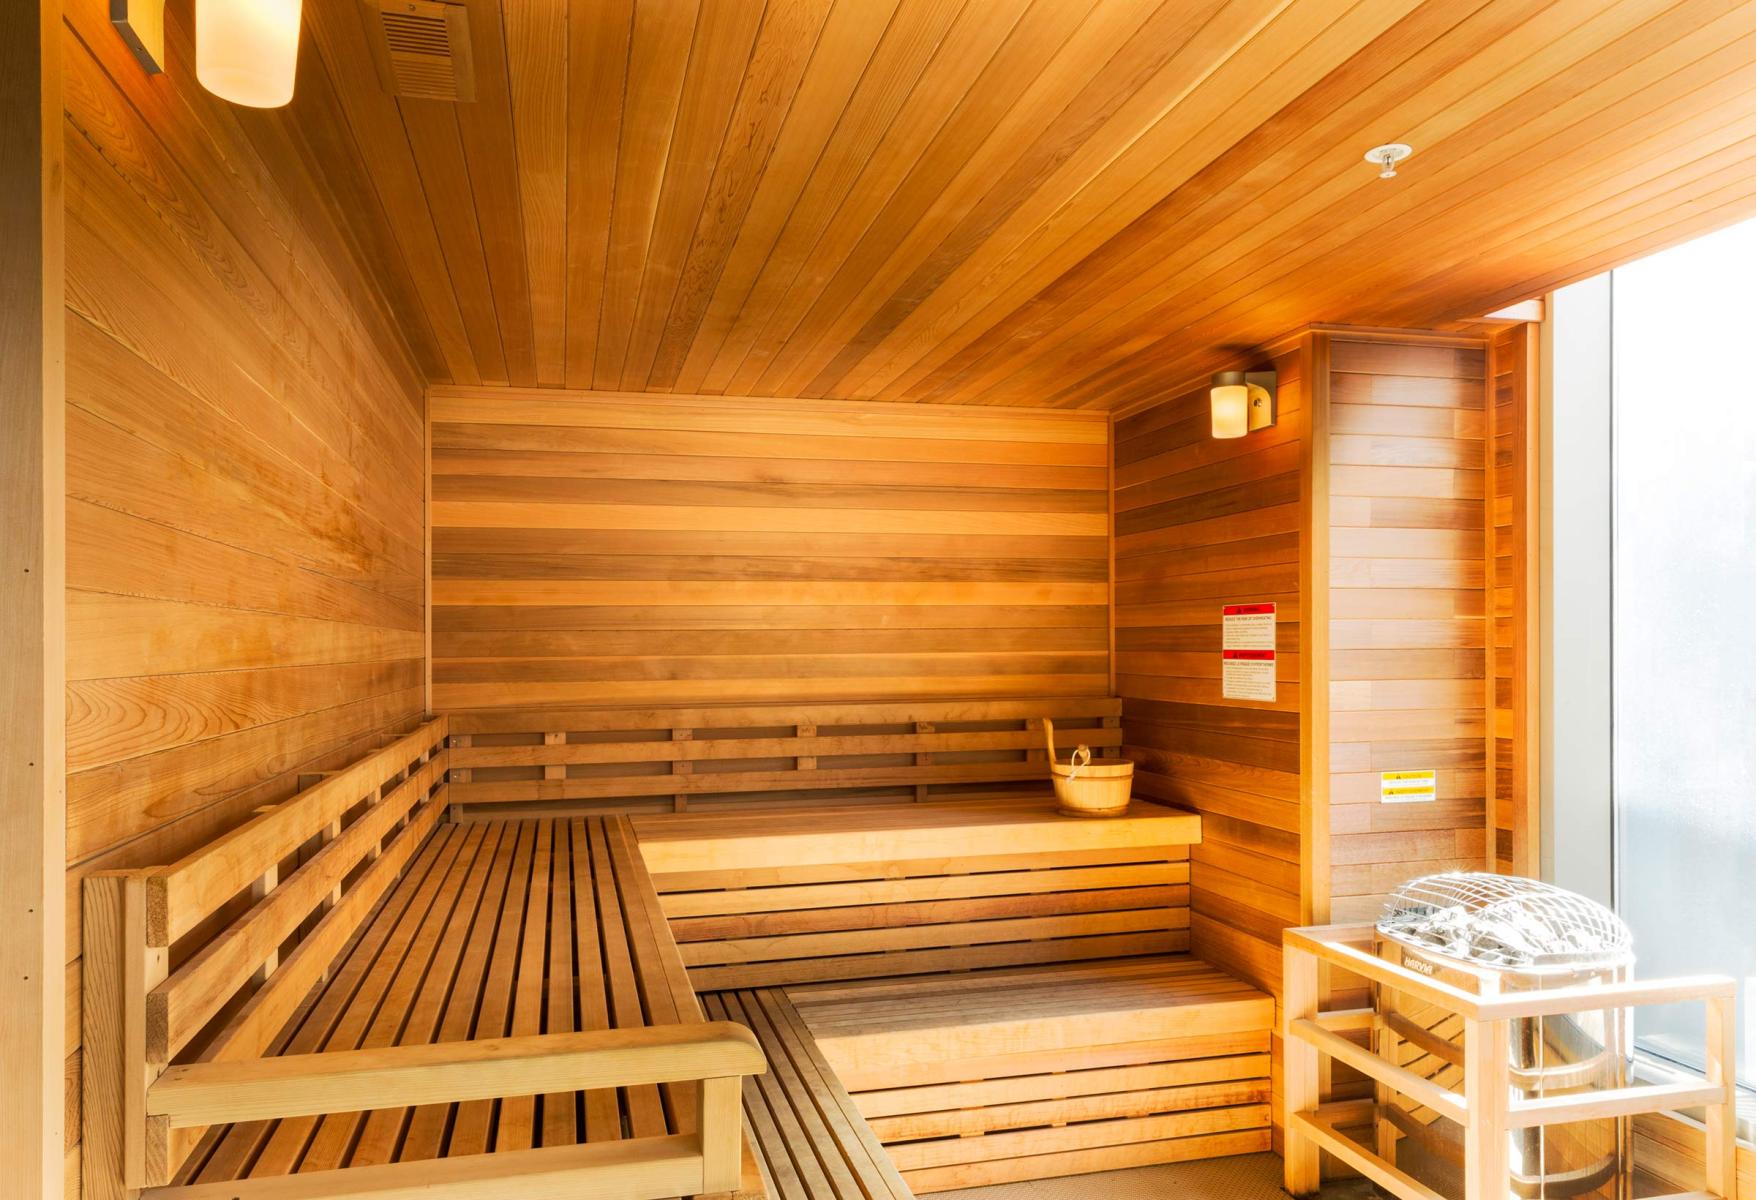 Soho Lofts - sauna : Soho Lofts : New York NY Architectural Photographer | Interior and Exterior